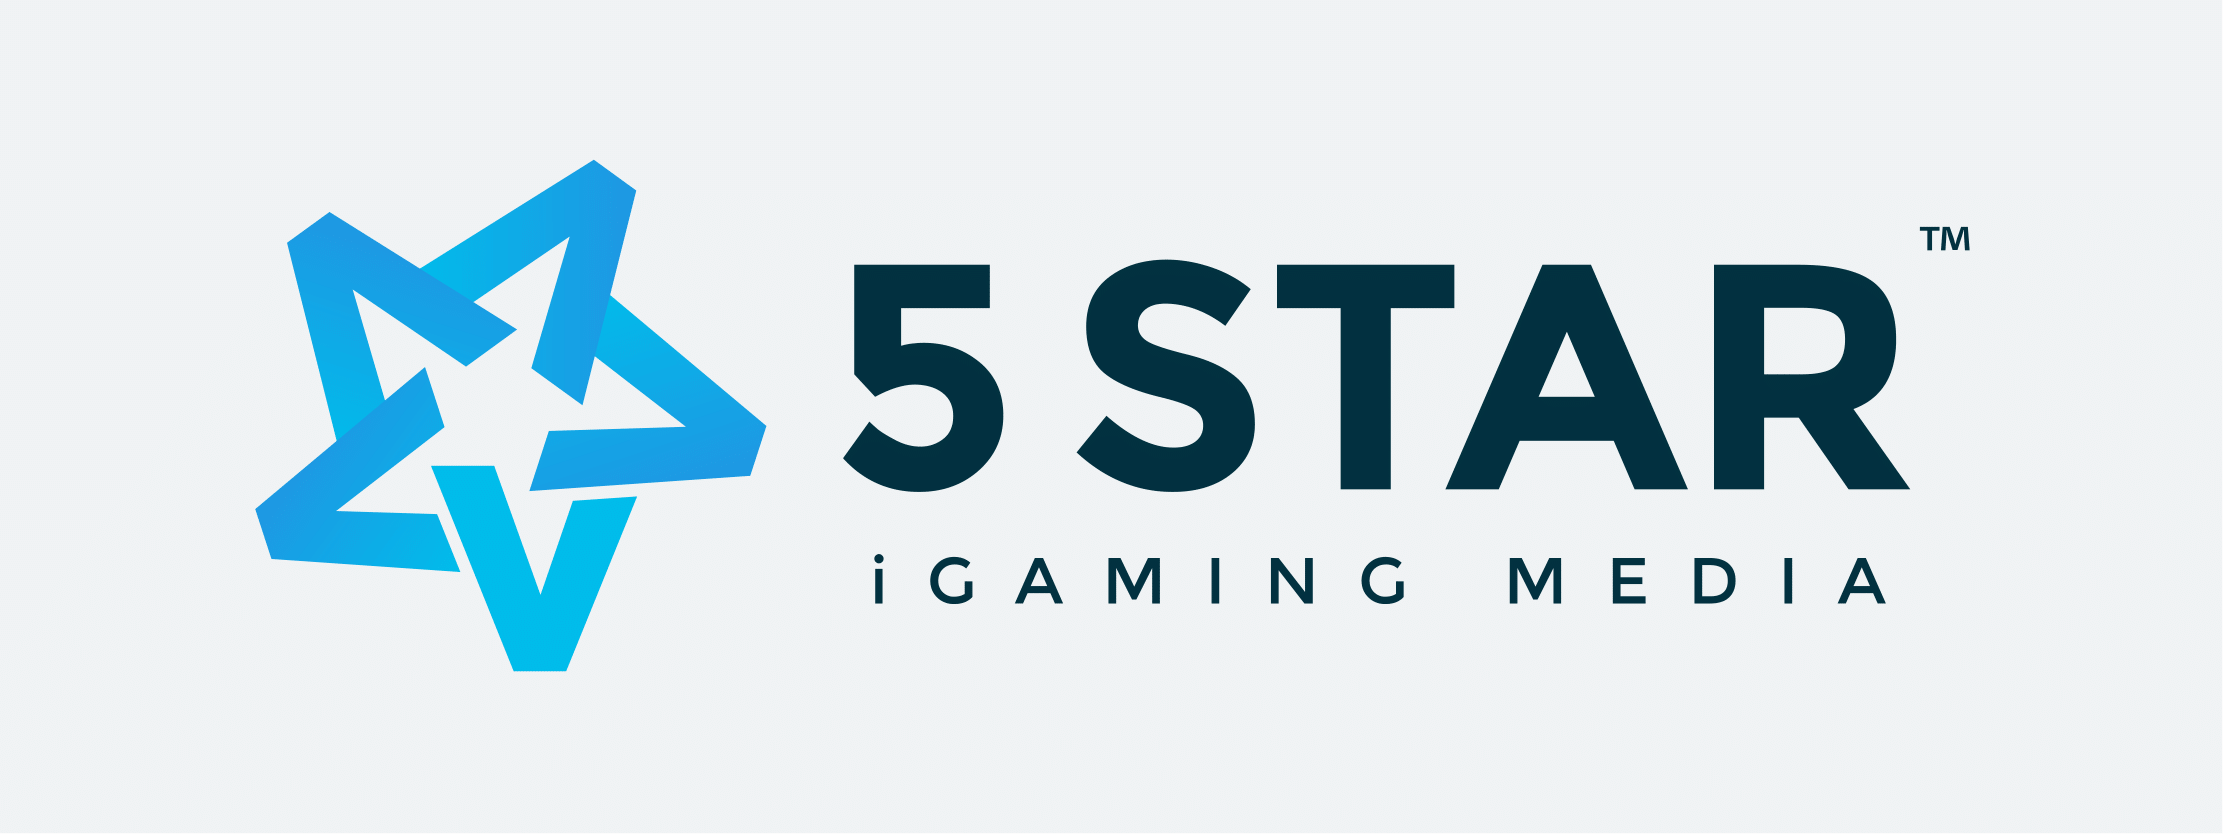 5 star iGaming media logo grey-BG-1 size 2223x834px